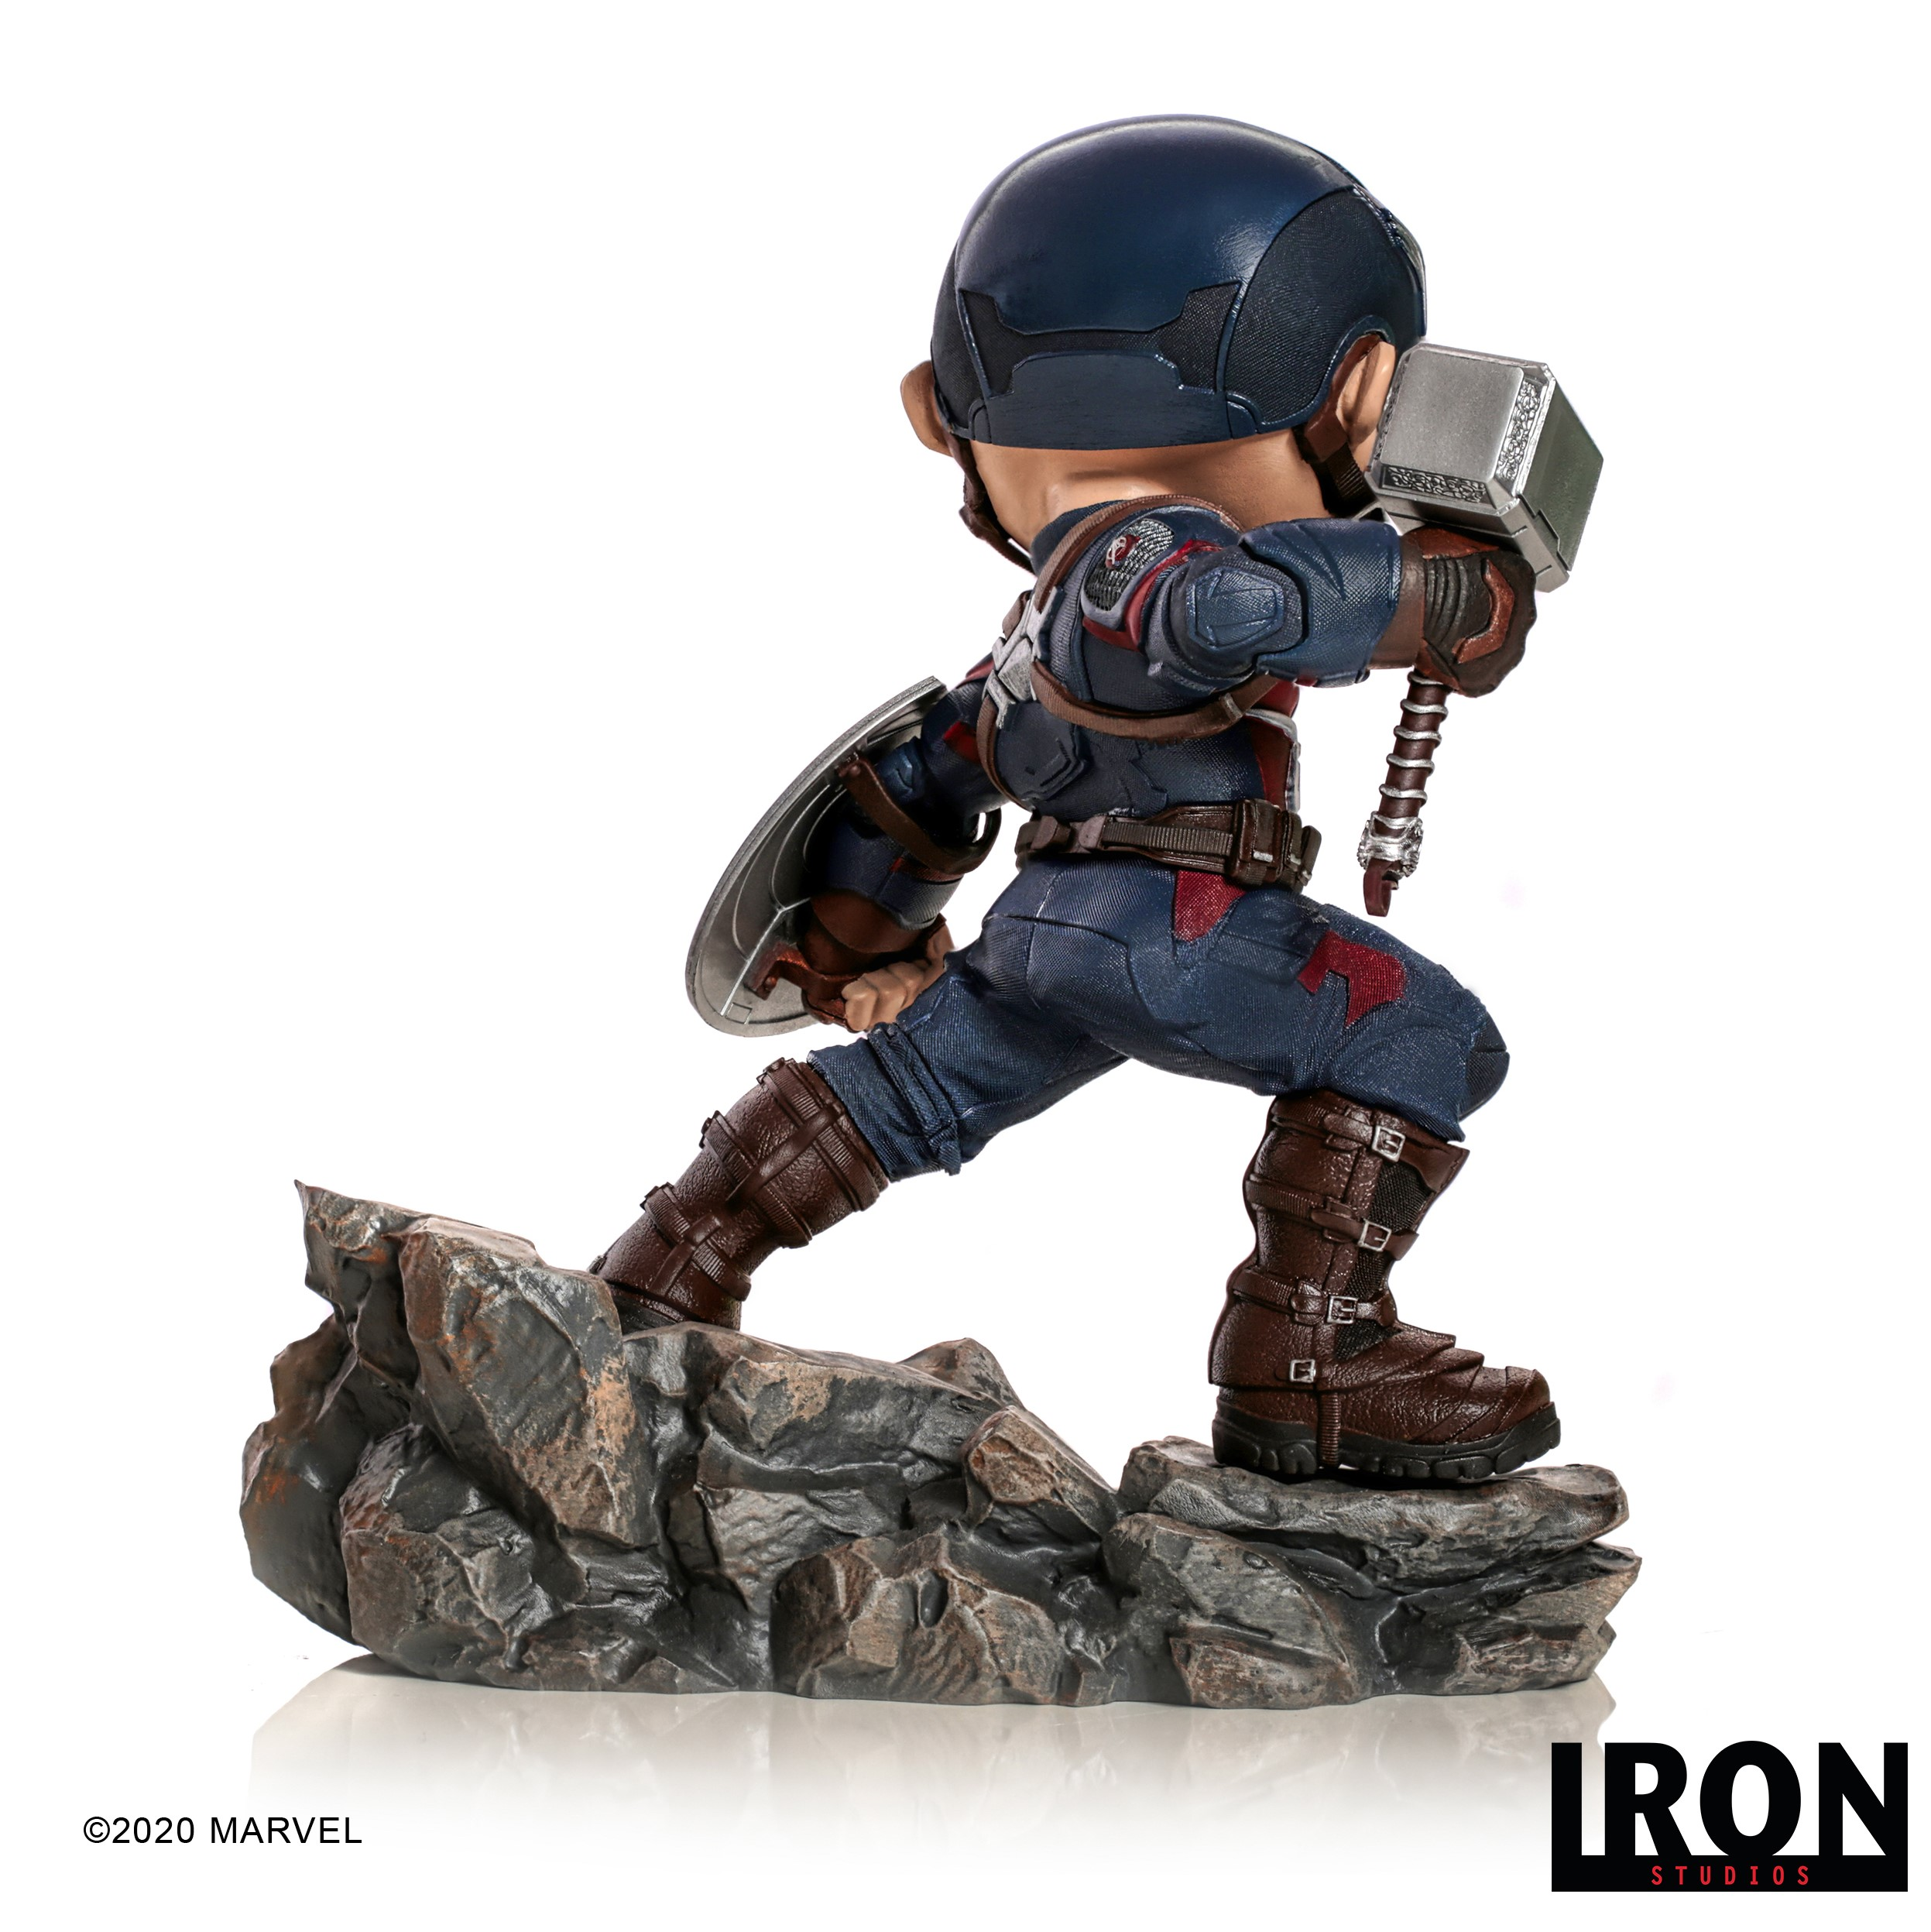 IRON STUDIOS Iron Studios & Captain Figur Minico America figur Avengers 